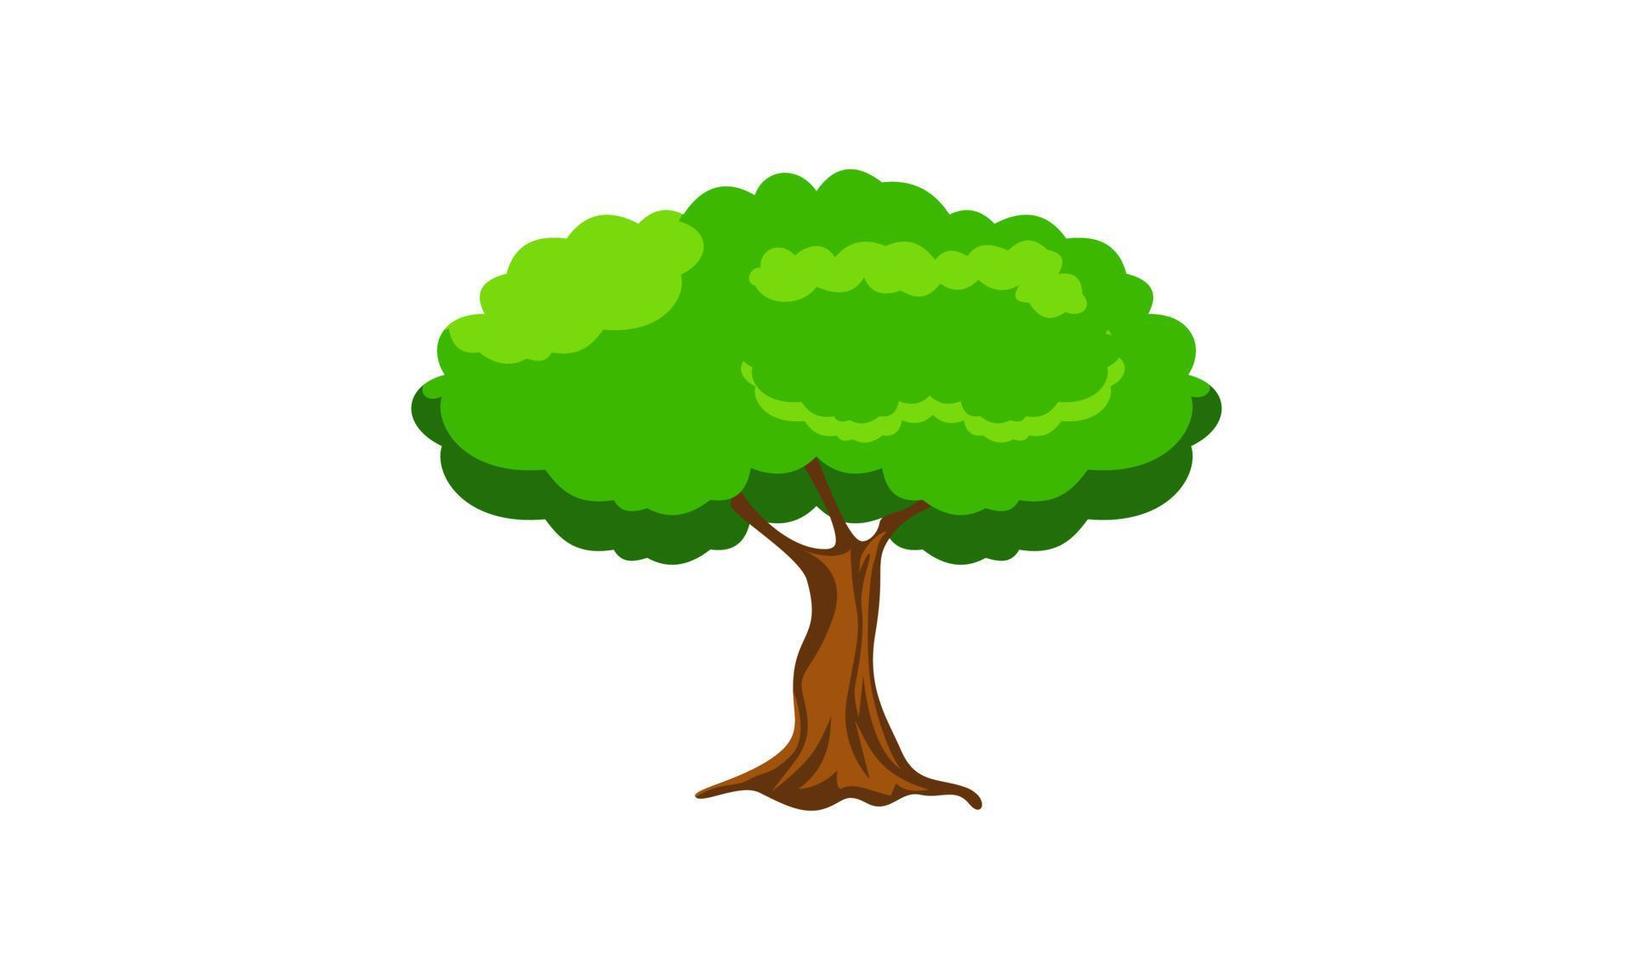 árvore verde decídua com ilustração vetorial isolada de raízes expostas vetor